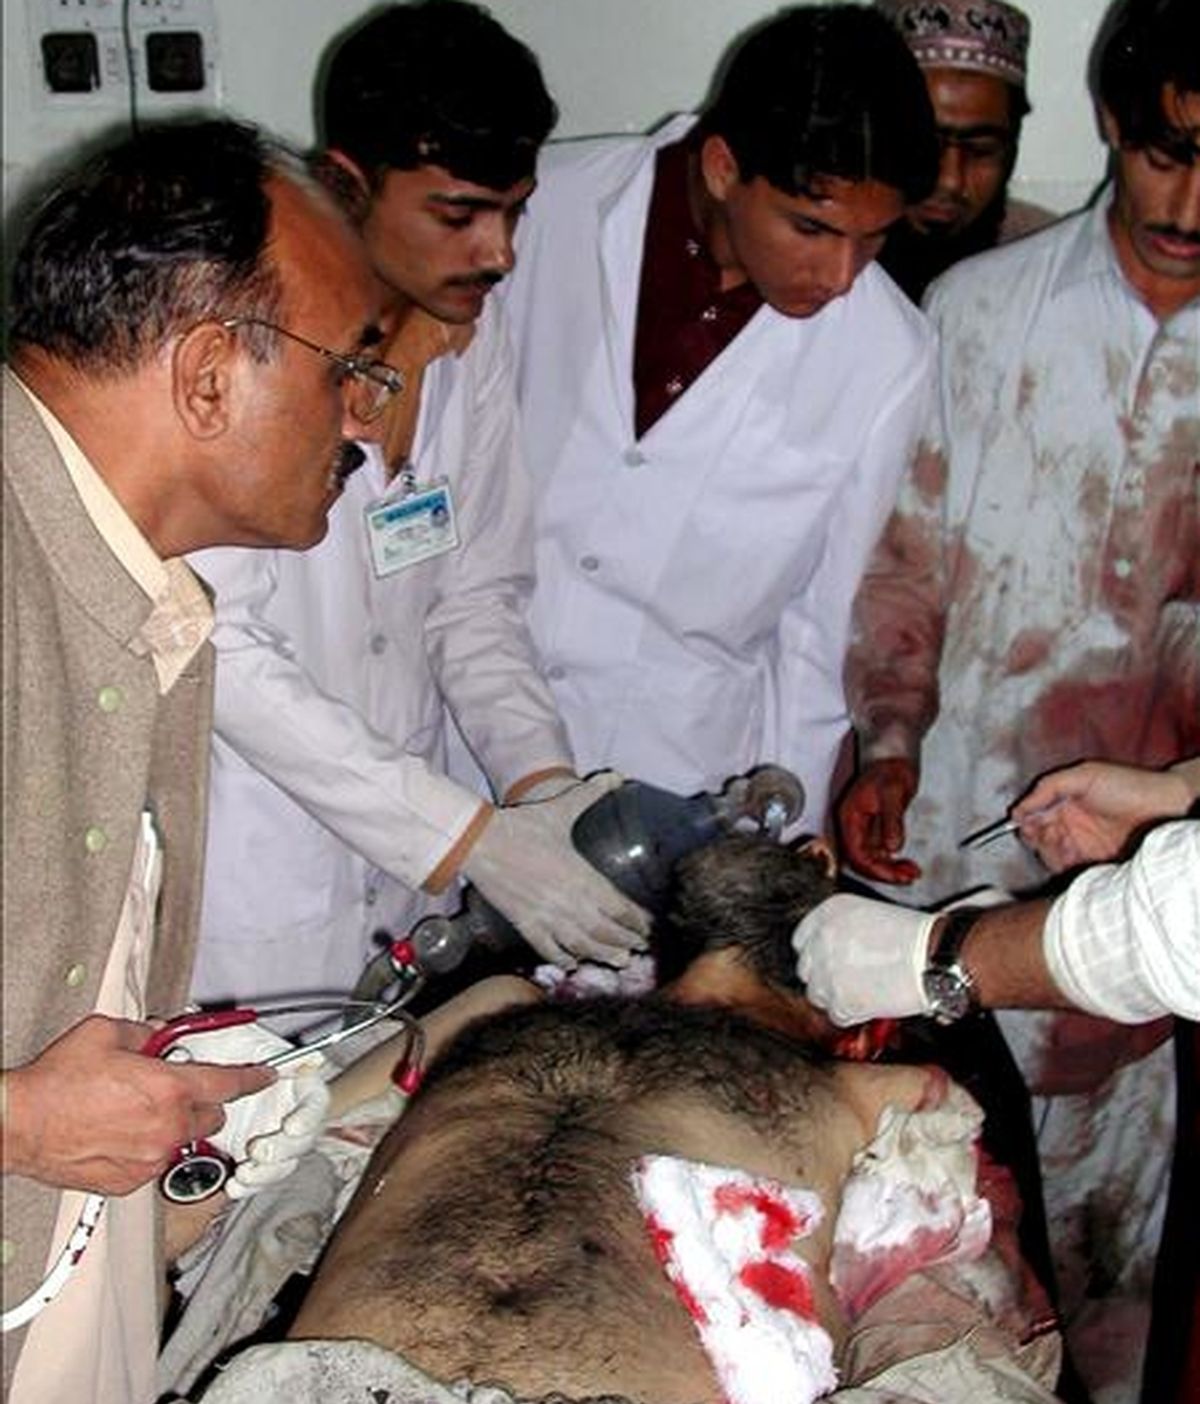 Uno de los heridos en un ataque suicida llevado a cabo en el centro policial de Tangi, provincia de Charsadda, recibe tratamiento médico en un hospital de Peshawar, capital de la Provincia de la Frontera del Noroeste (NWFP), Pakistán, el pasado 15 de abril. EFE